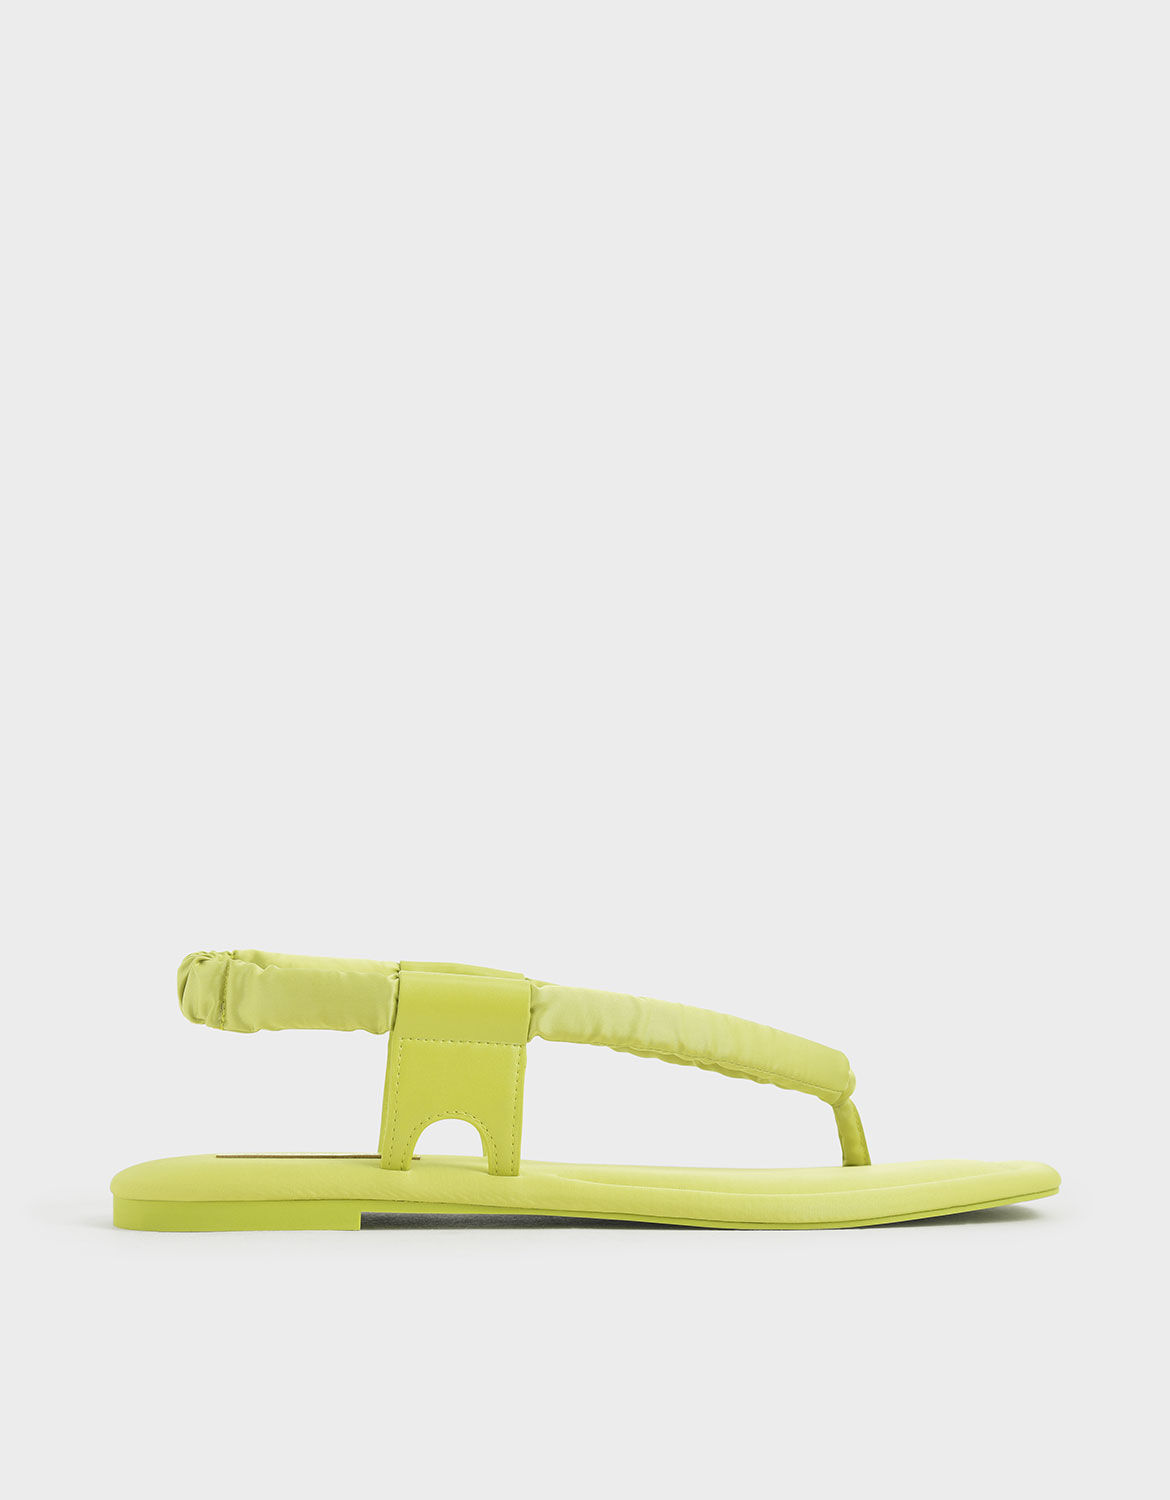 green thong sandals